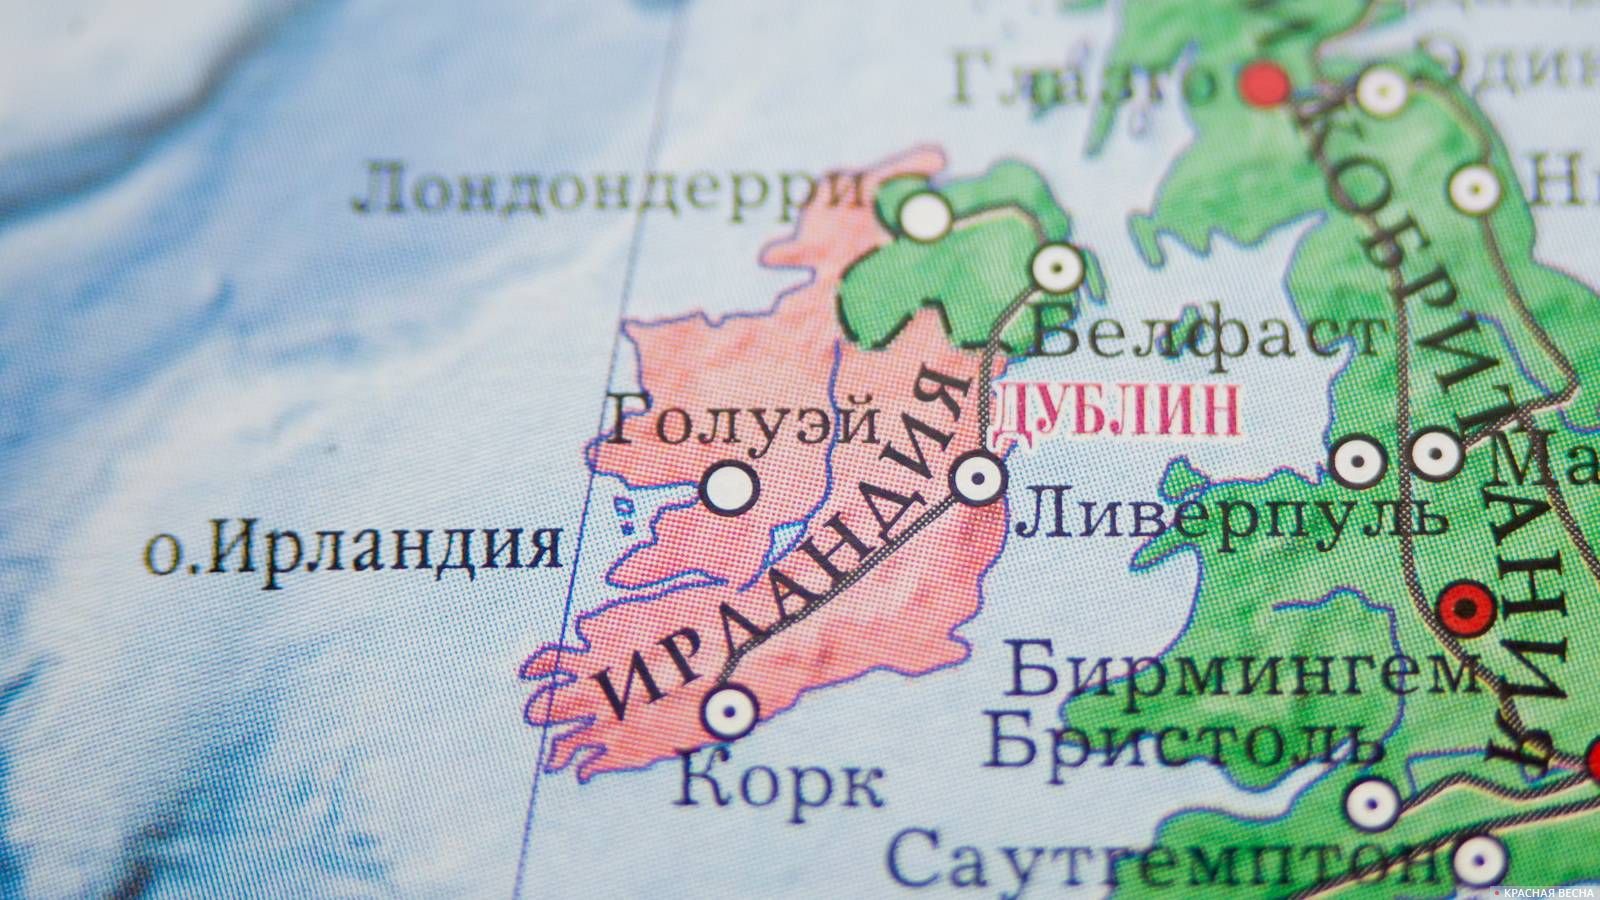 ирландия и северная ирландия на карте мира